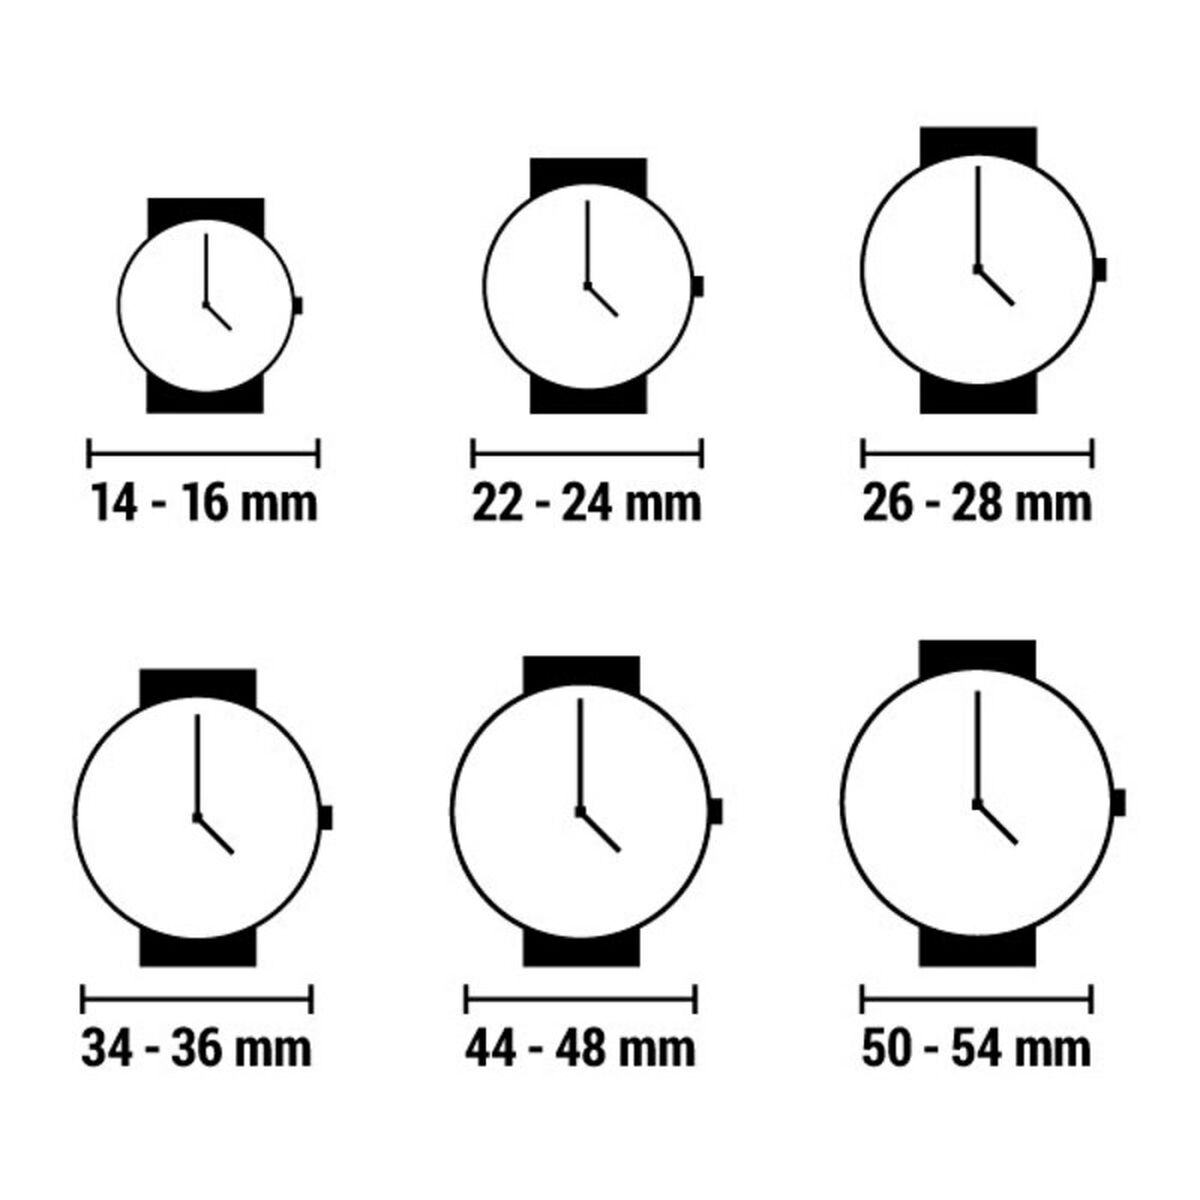 Horloge Dames Chronotech CT7988LS-04M (Ø 33 mm)